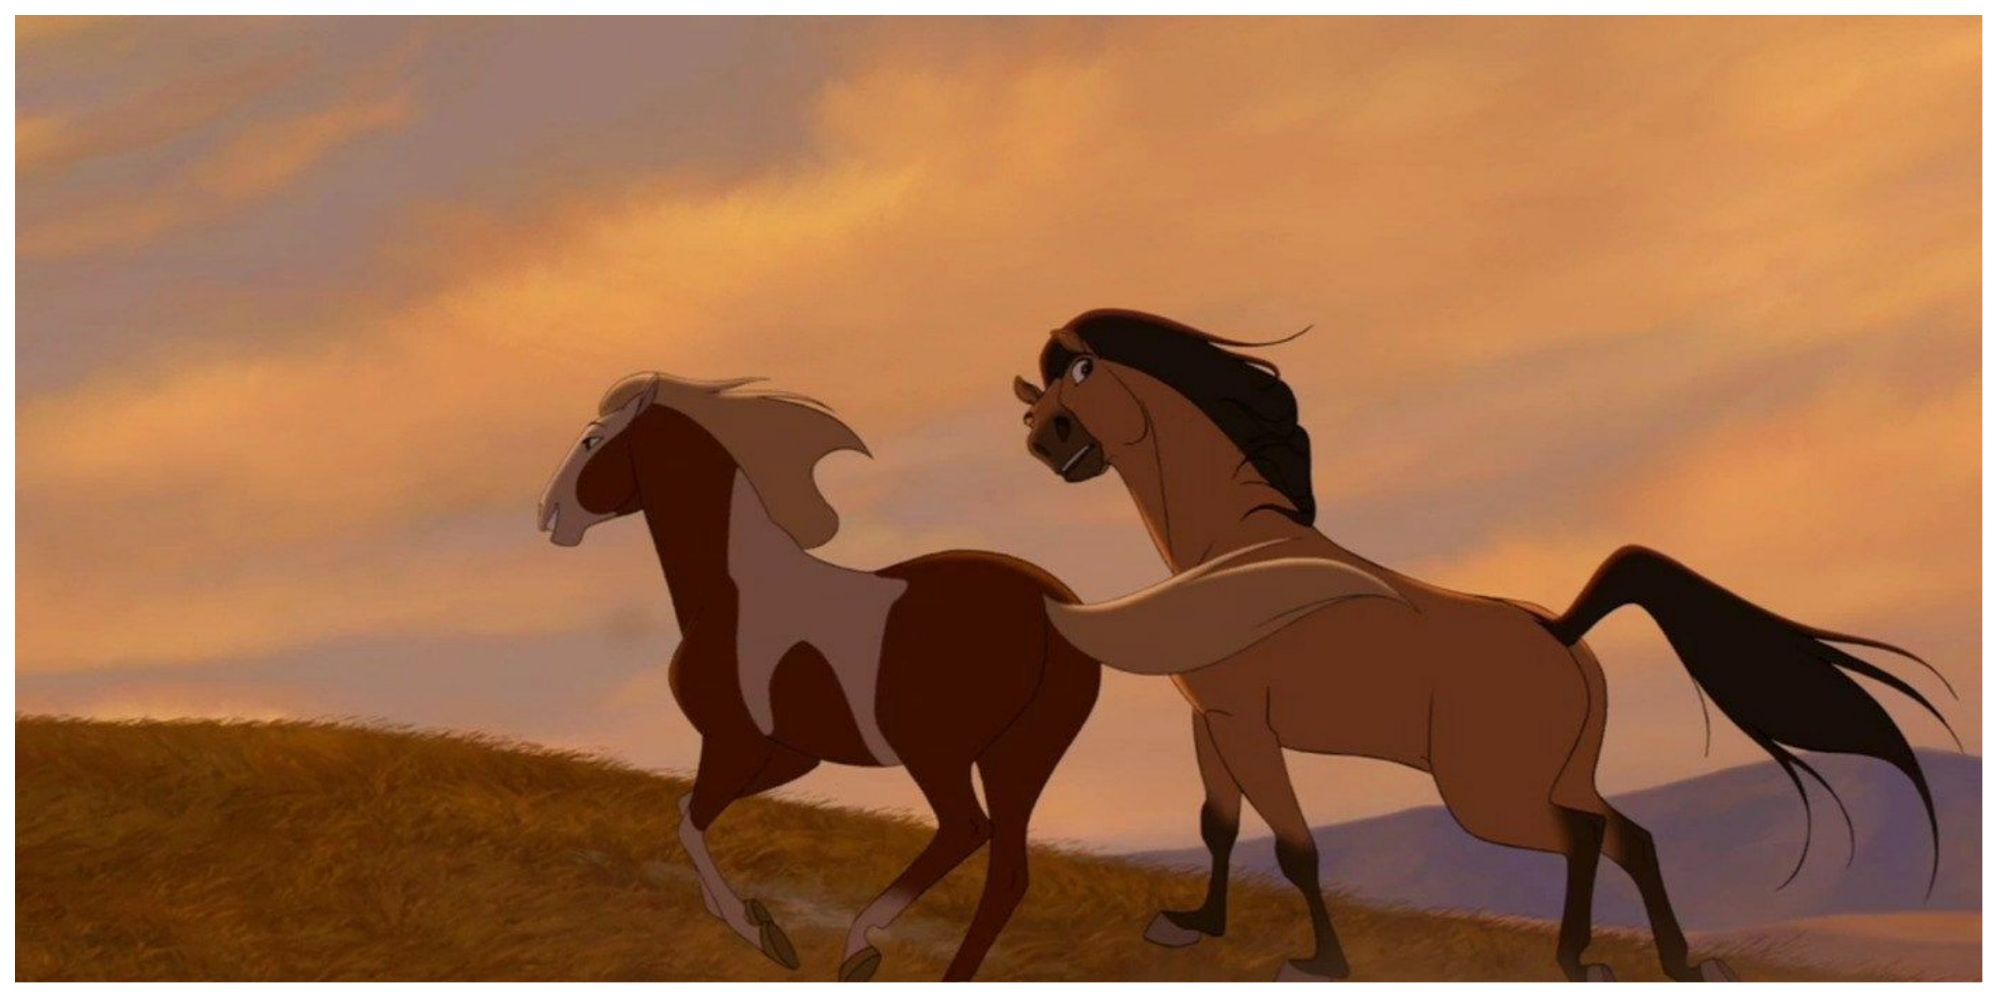 The ending of DreamWorks' Spirit: Stallion of the Cimarron.